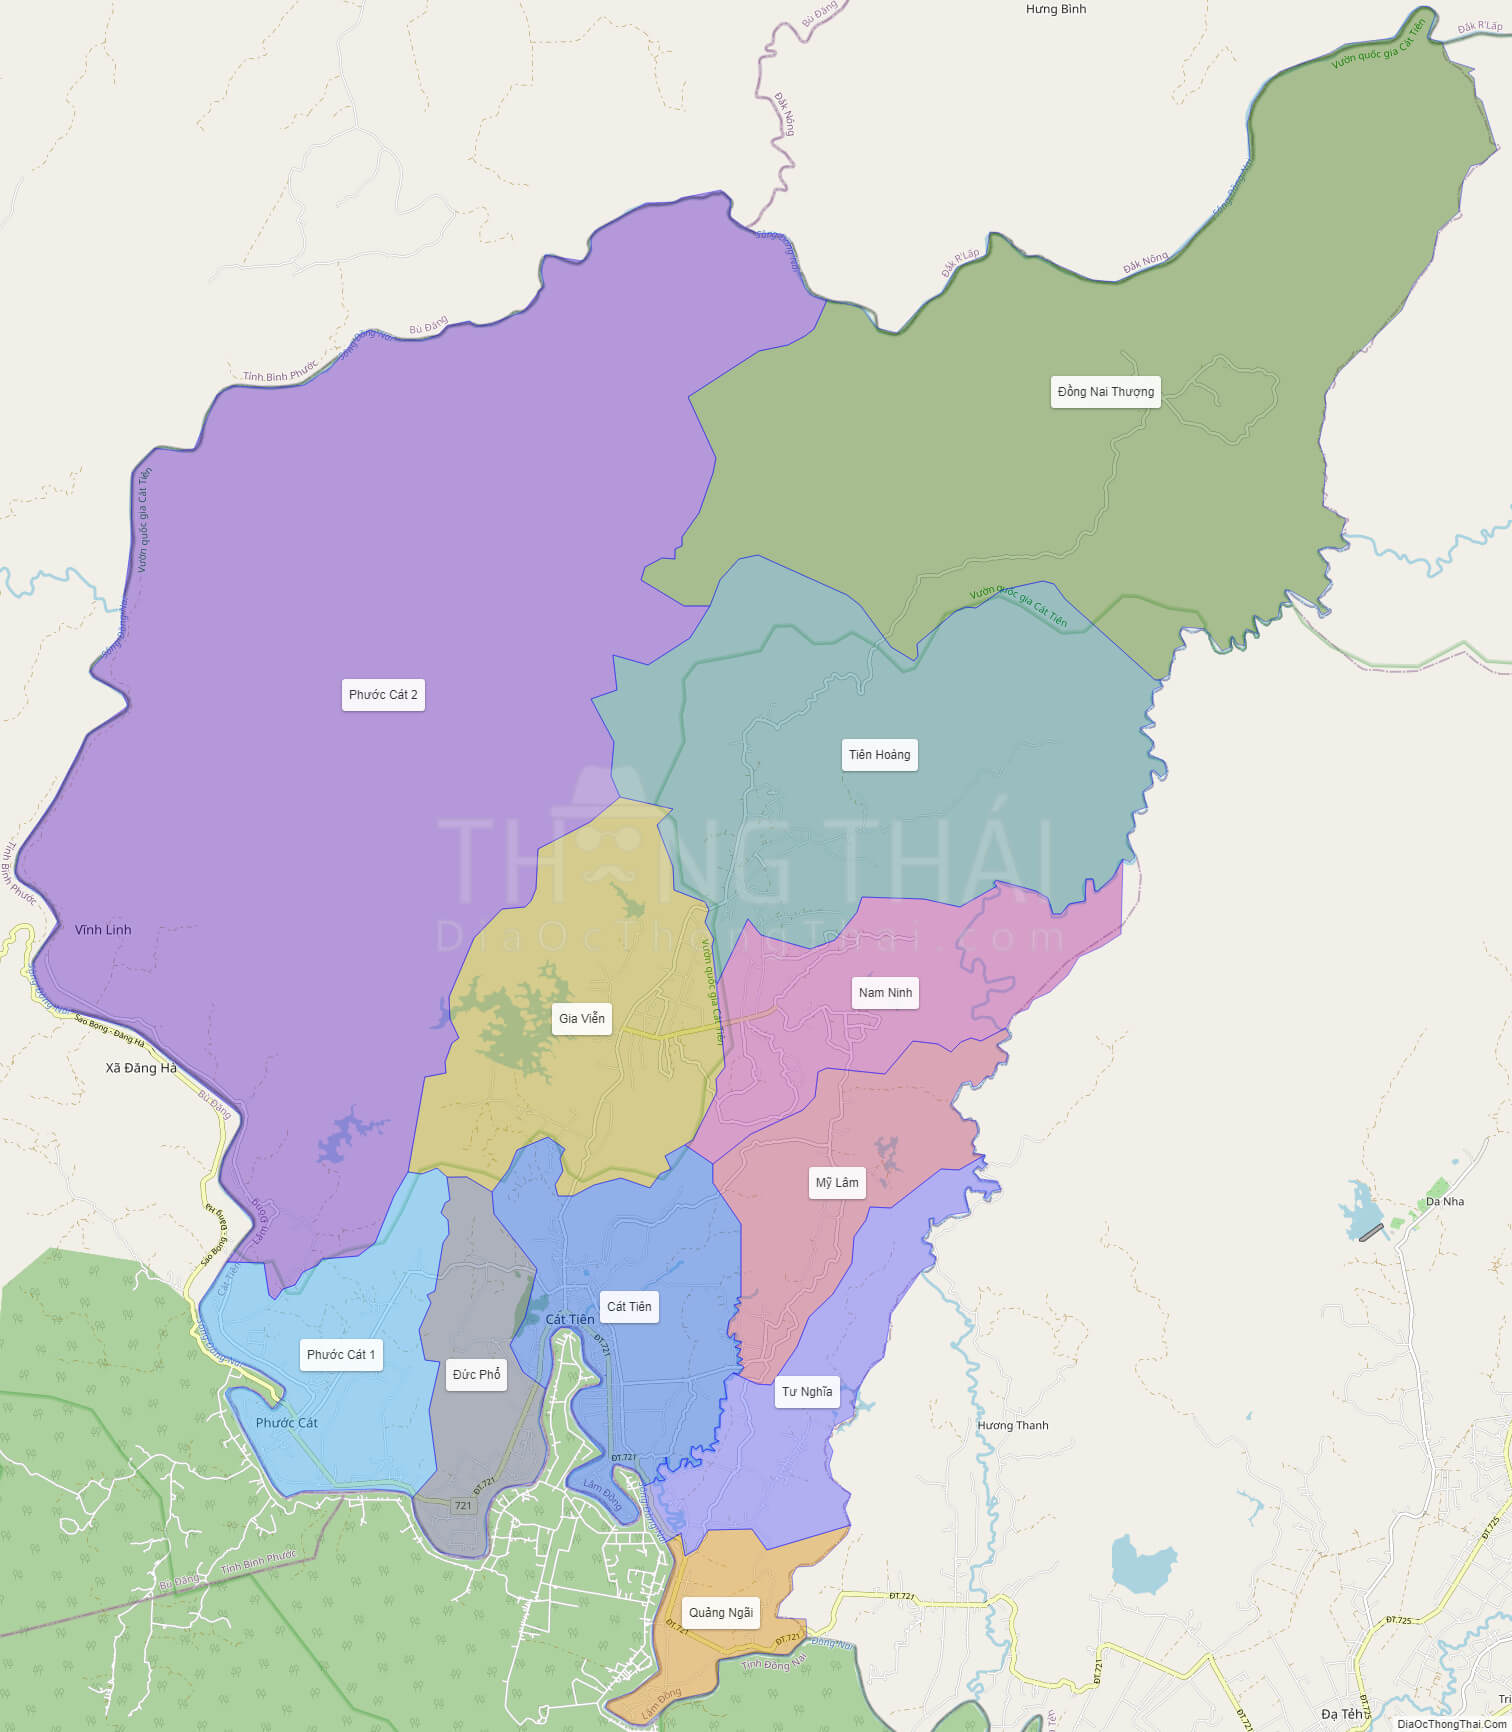 Đến năm 2024, bản đồ huyện Cát Tiên Lâm Đồng đã được cập nhật một cách đầy đủ và chính xác nhất. Nếu bạn là người yêu thích du lịch hoặc địa lý, hãy tải về bản đồ này ngay hôm nay để khám phá được những điểm đến thú vị tại vùng đất Tây Nguyên đầy tiềm năng.